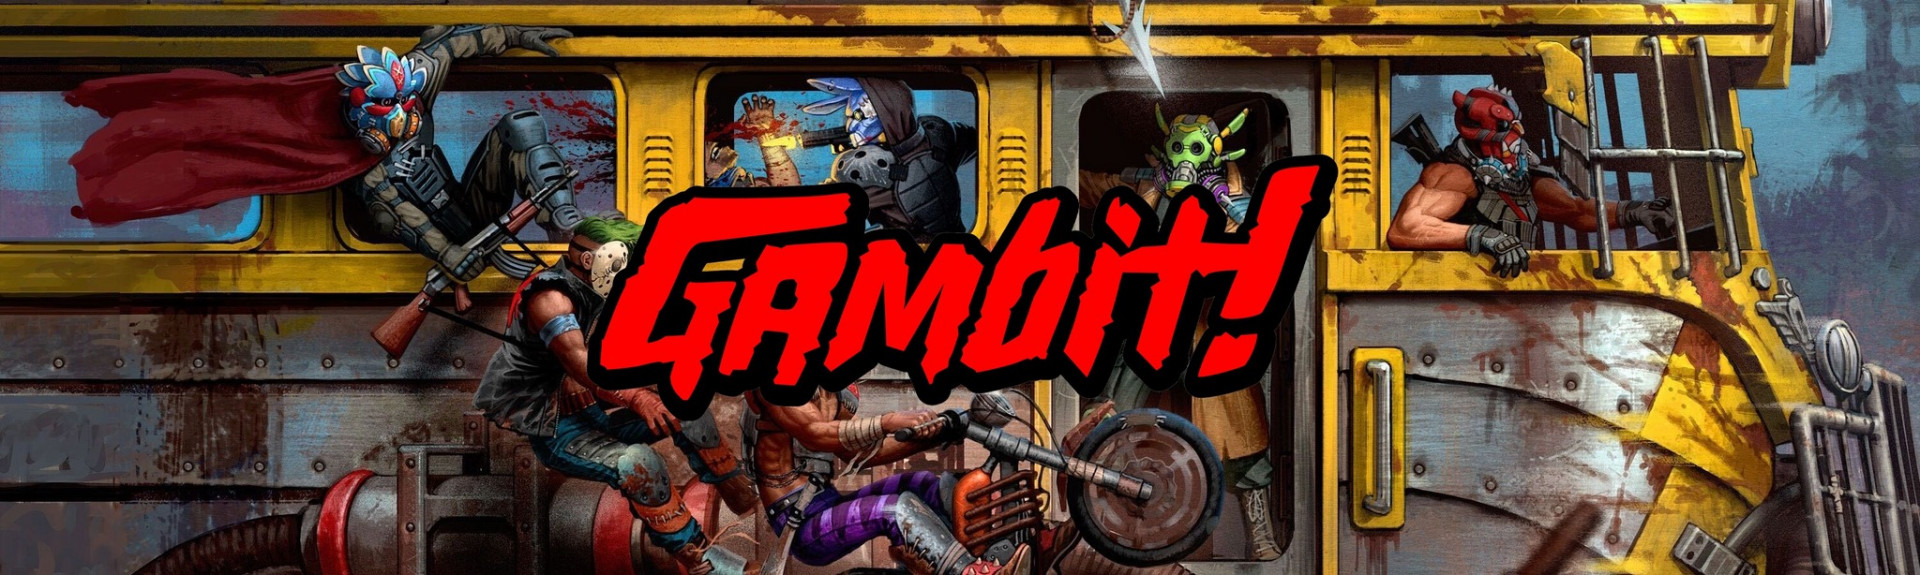 Gambit! - ANÁLISIS